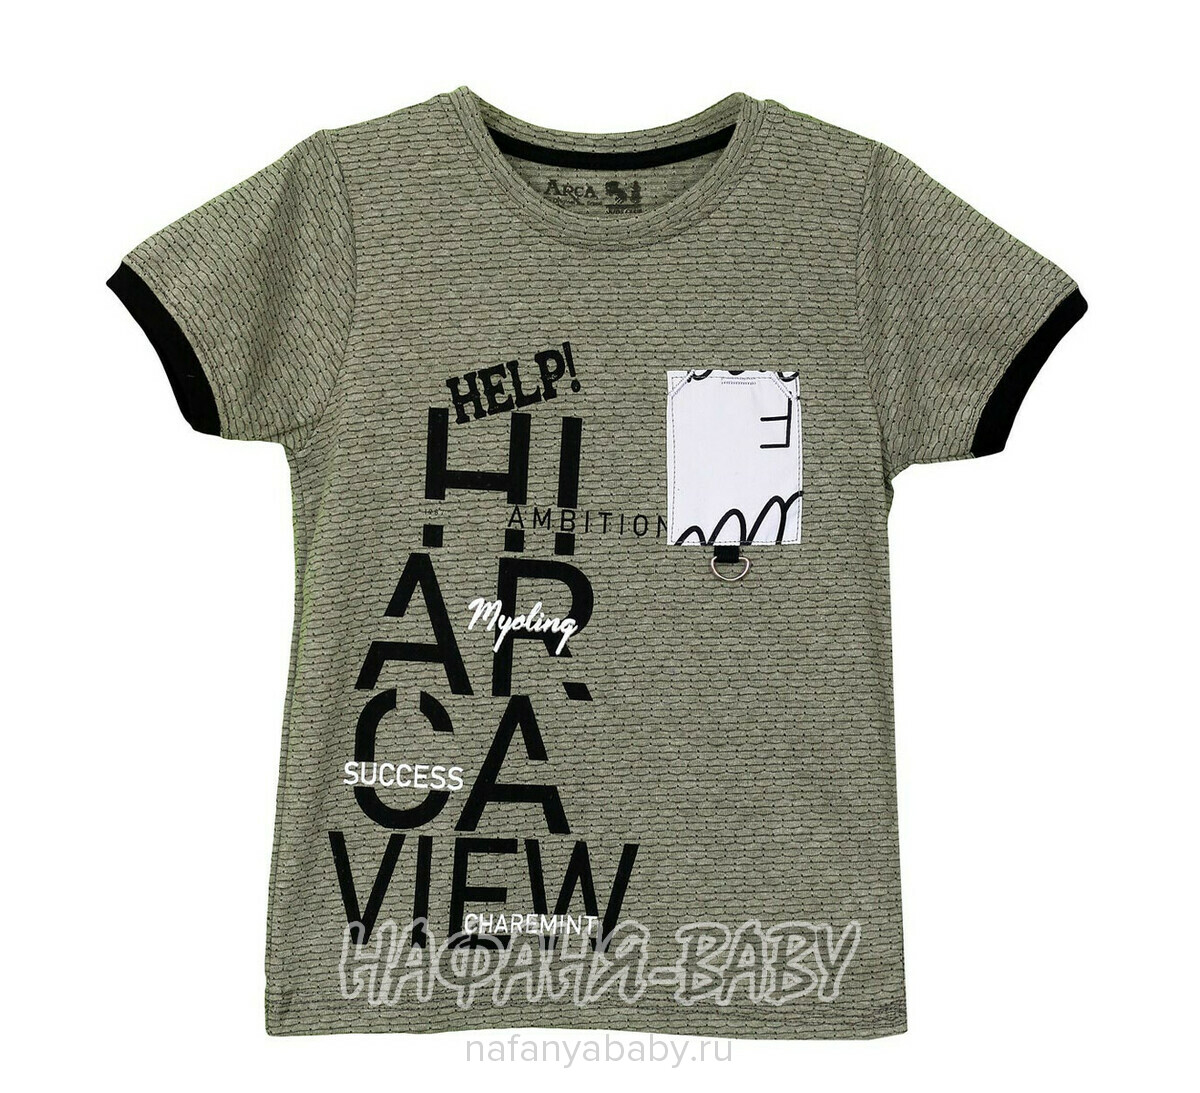 Детская футболка ARCA арт: 6014-1, 1-4 года, 5-9 лет, цвет дымчато-зеленый хаки, оптом Турция